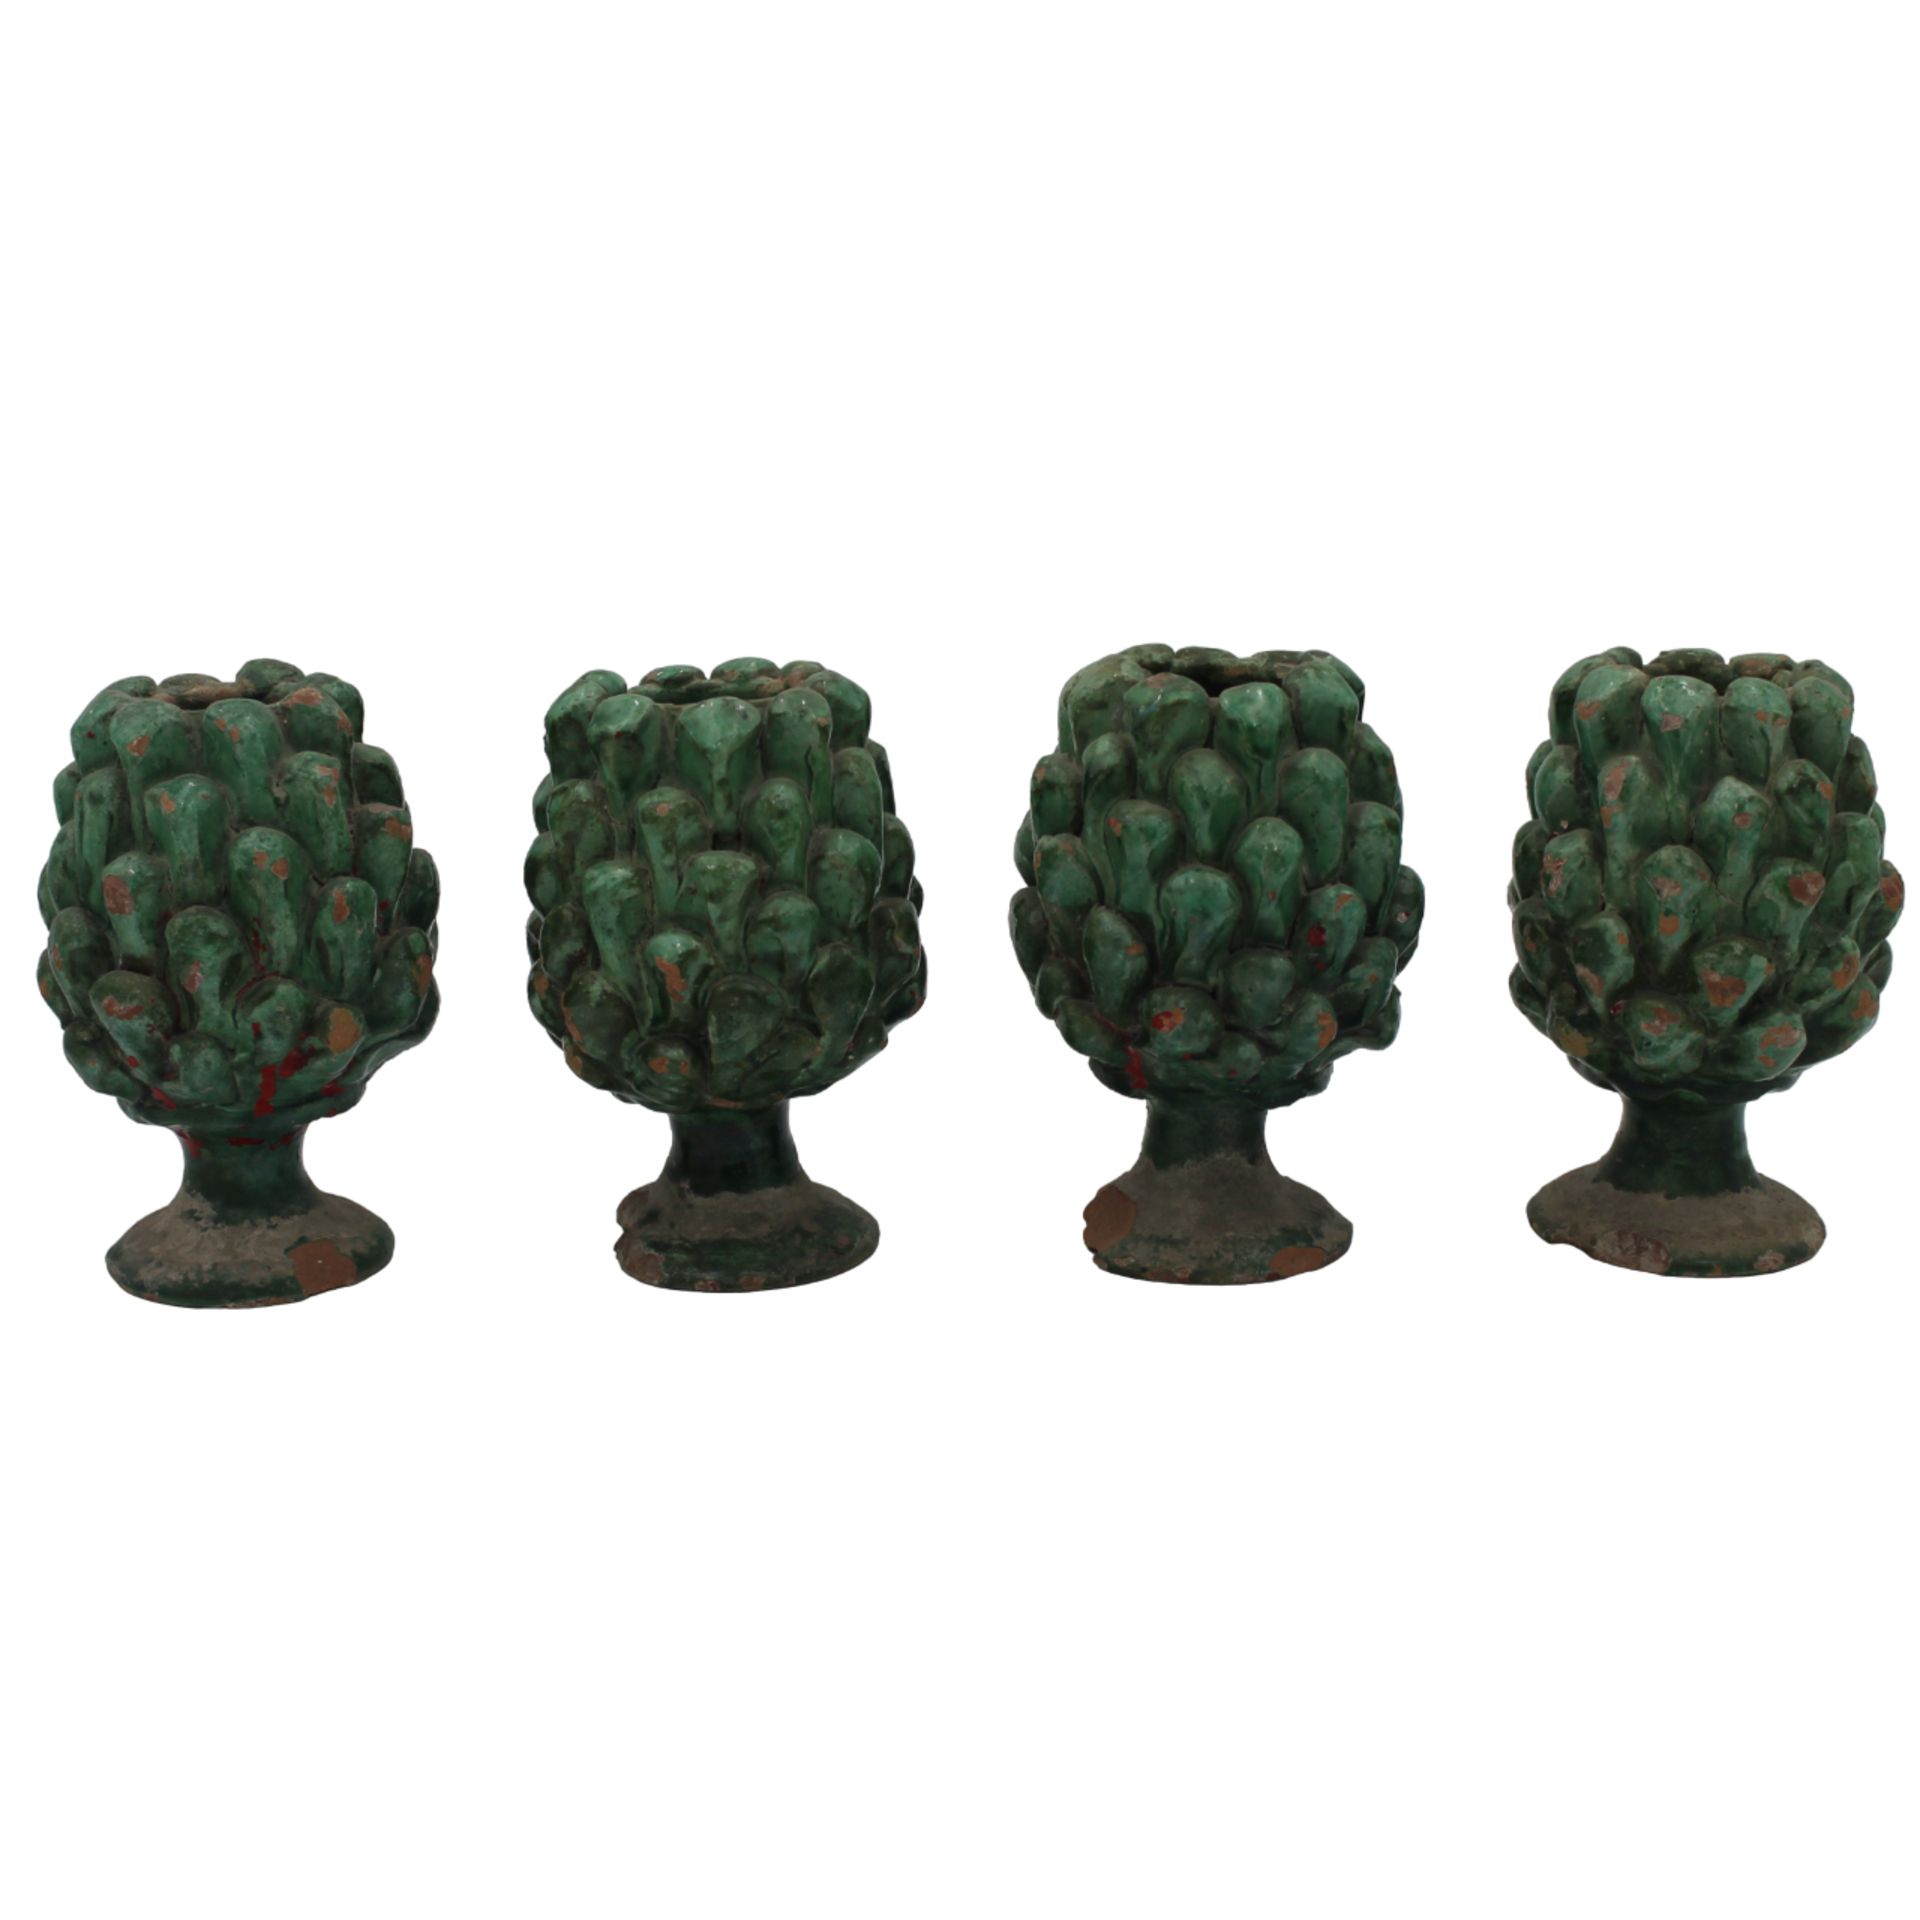 Quattro pigne - Four pine cones